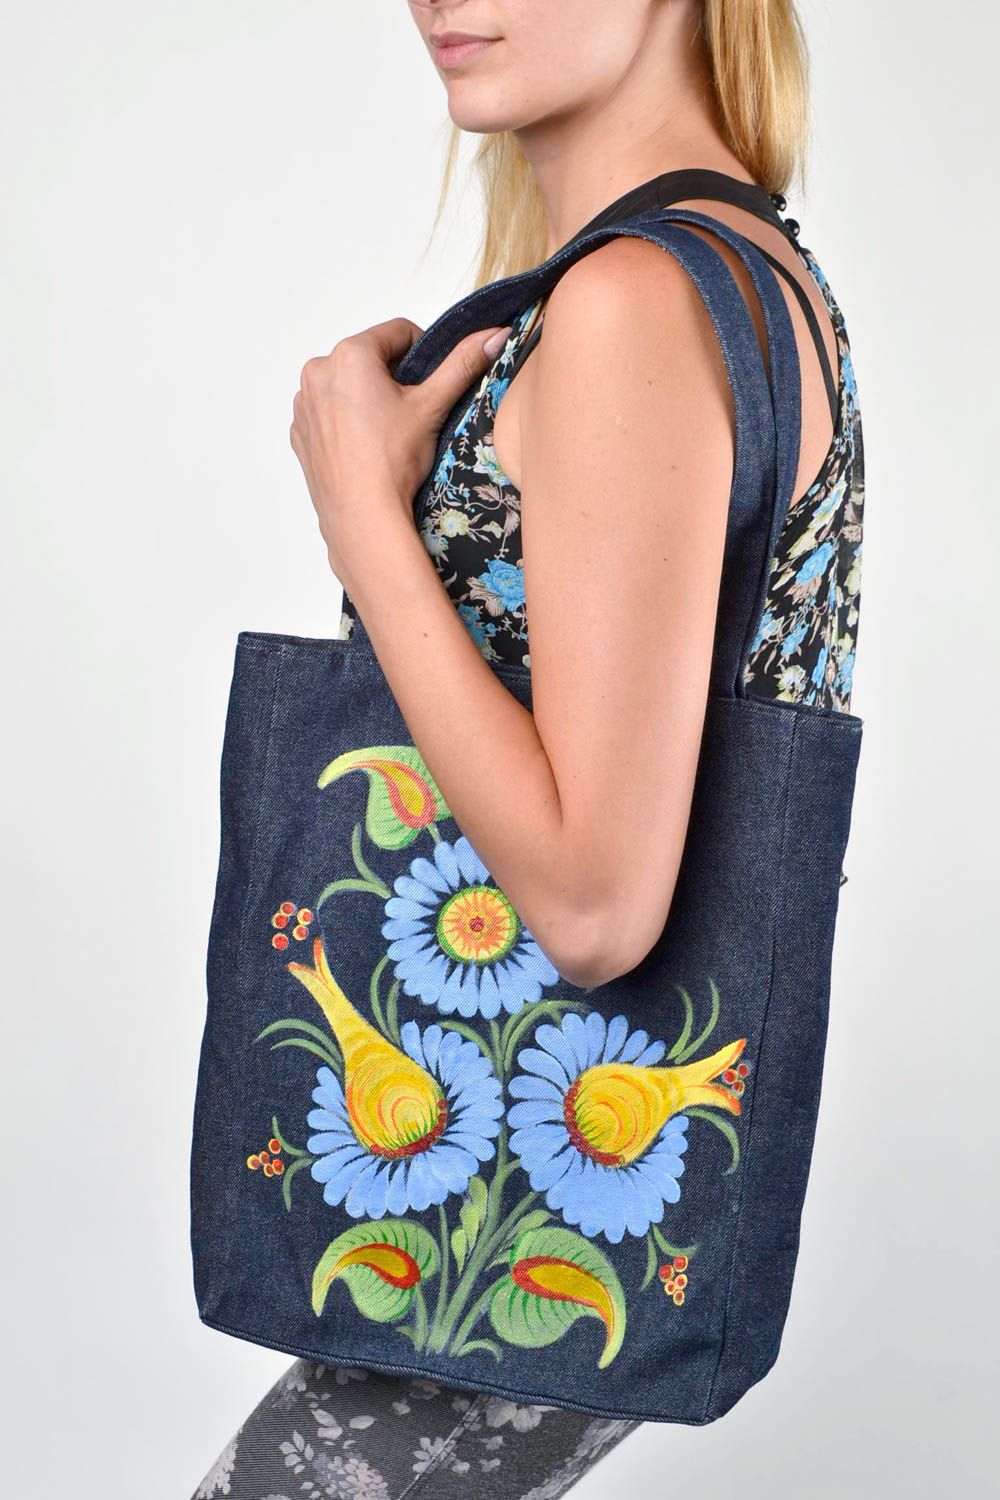 Сумка ручной работы женская сумка хлопковая сумка с росписью красивая большая фото 1